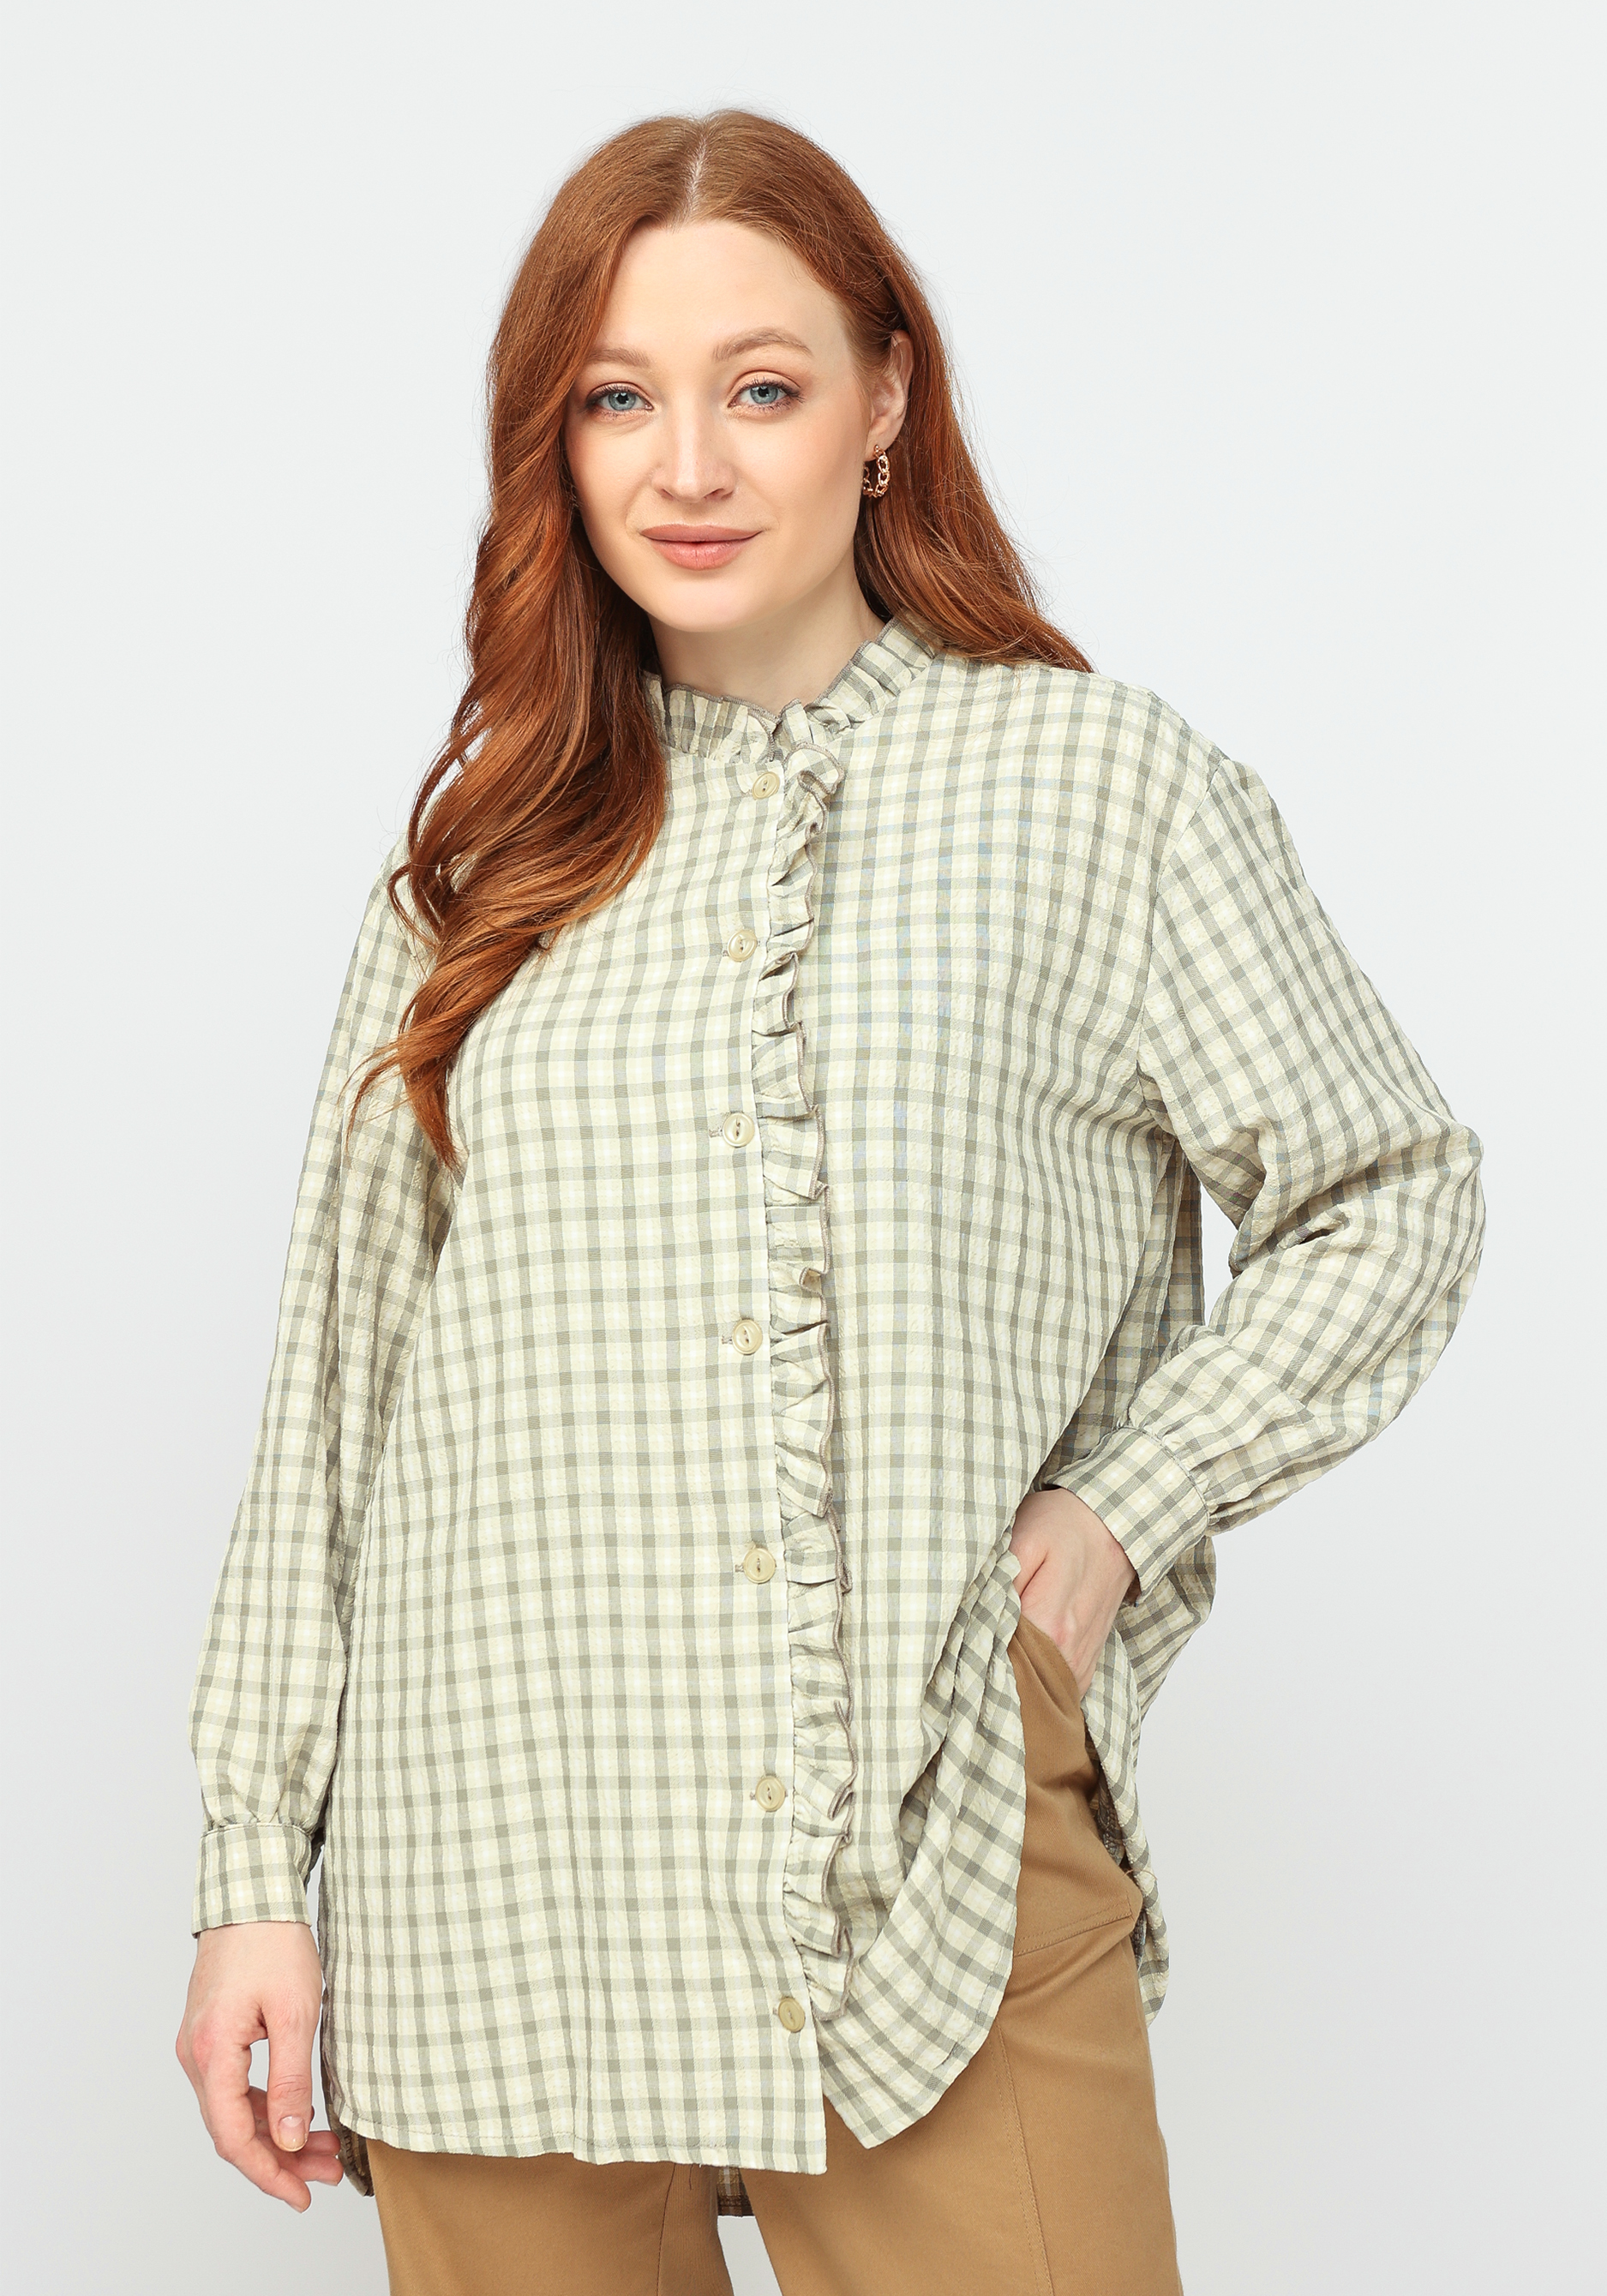 Блуза с рюшей по горловине и борту блуза с оригинальной отделкой по горловине